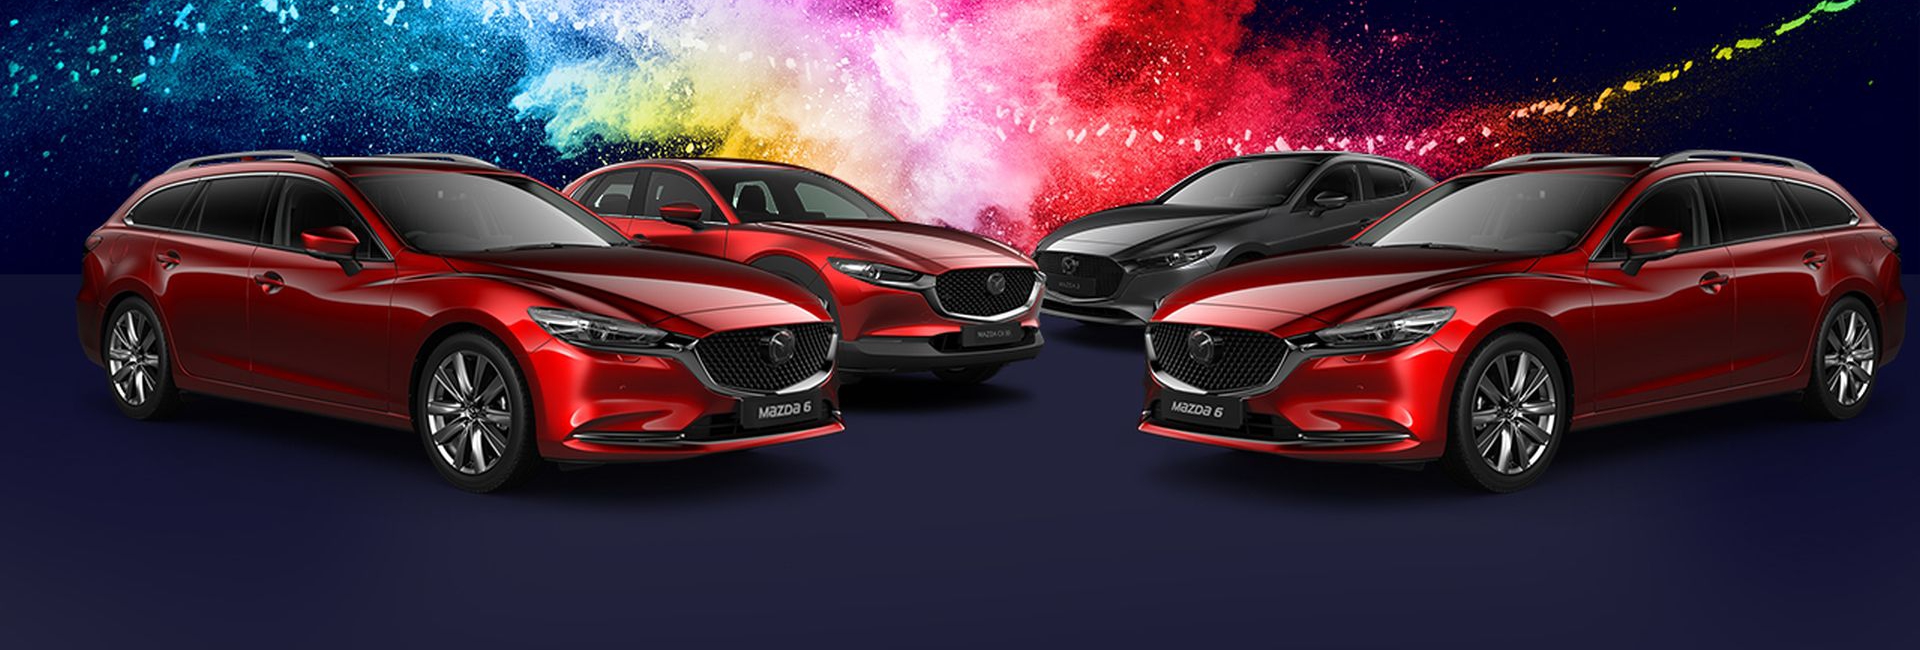 Mazda Készletkisöprés